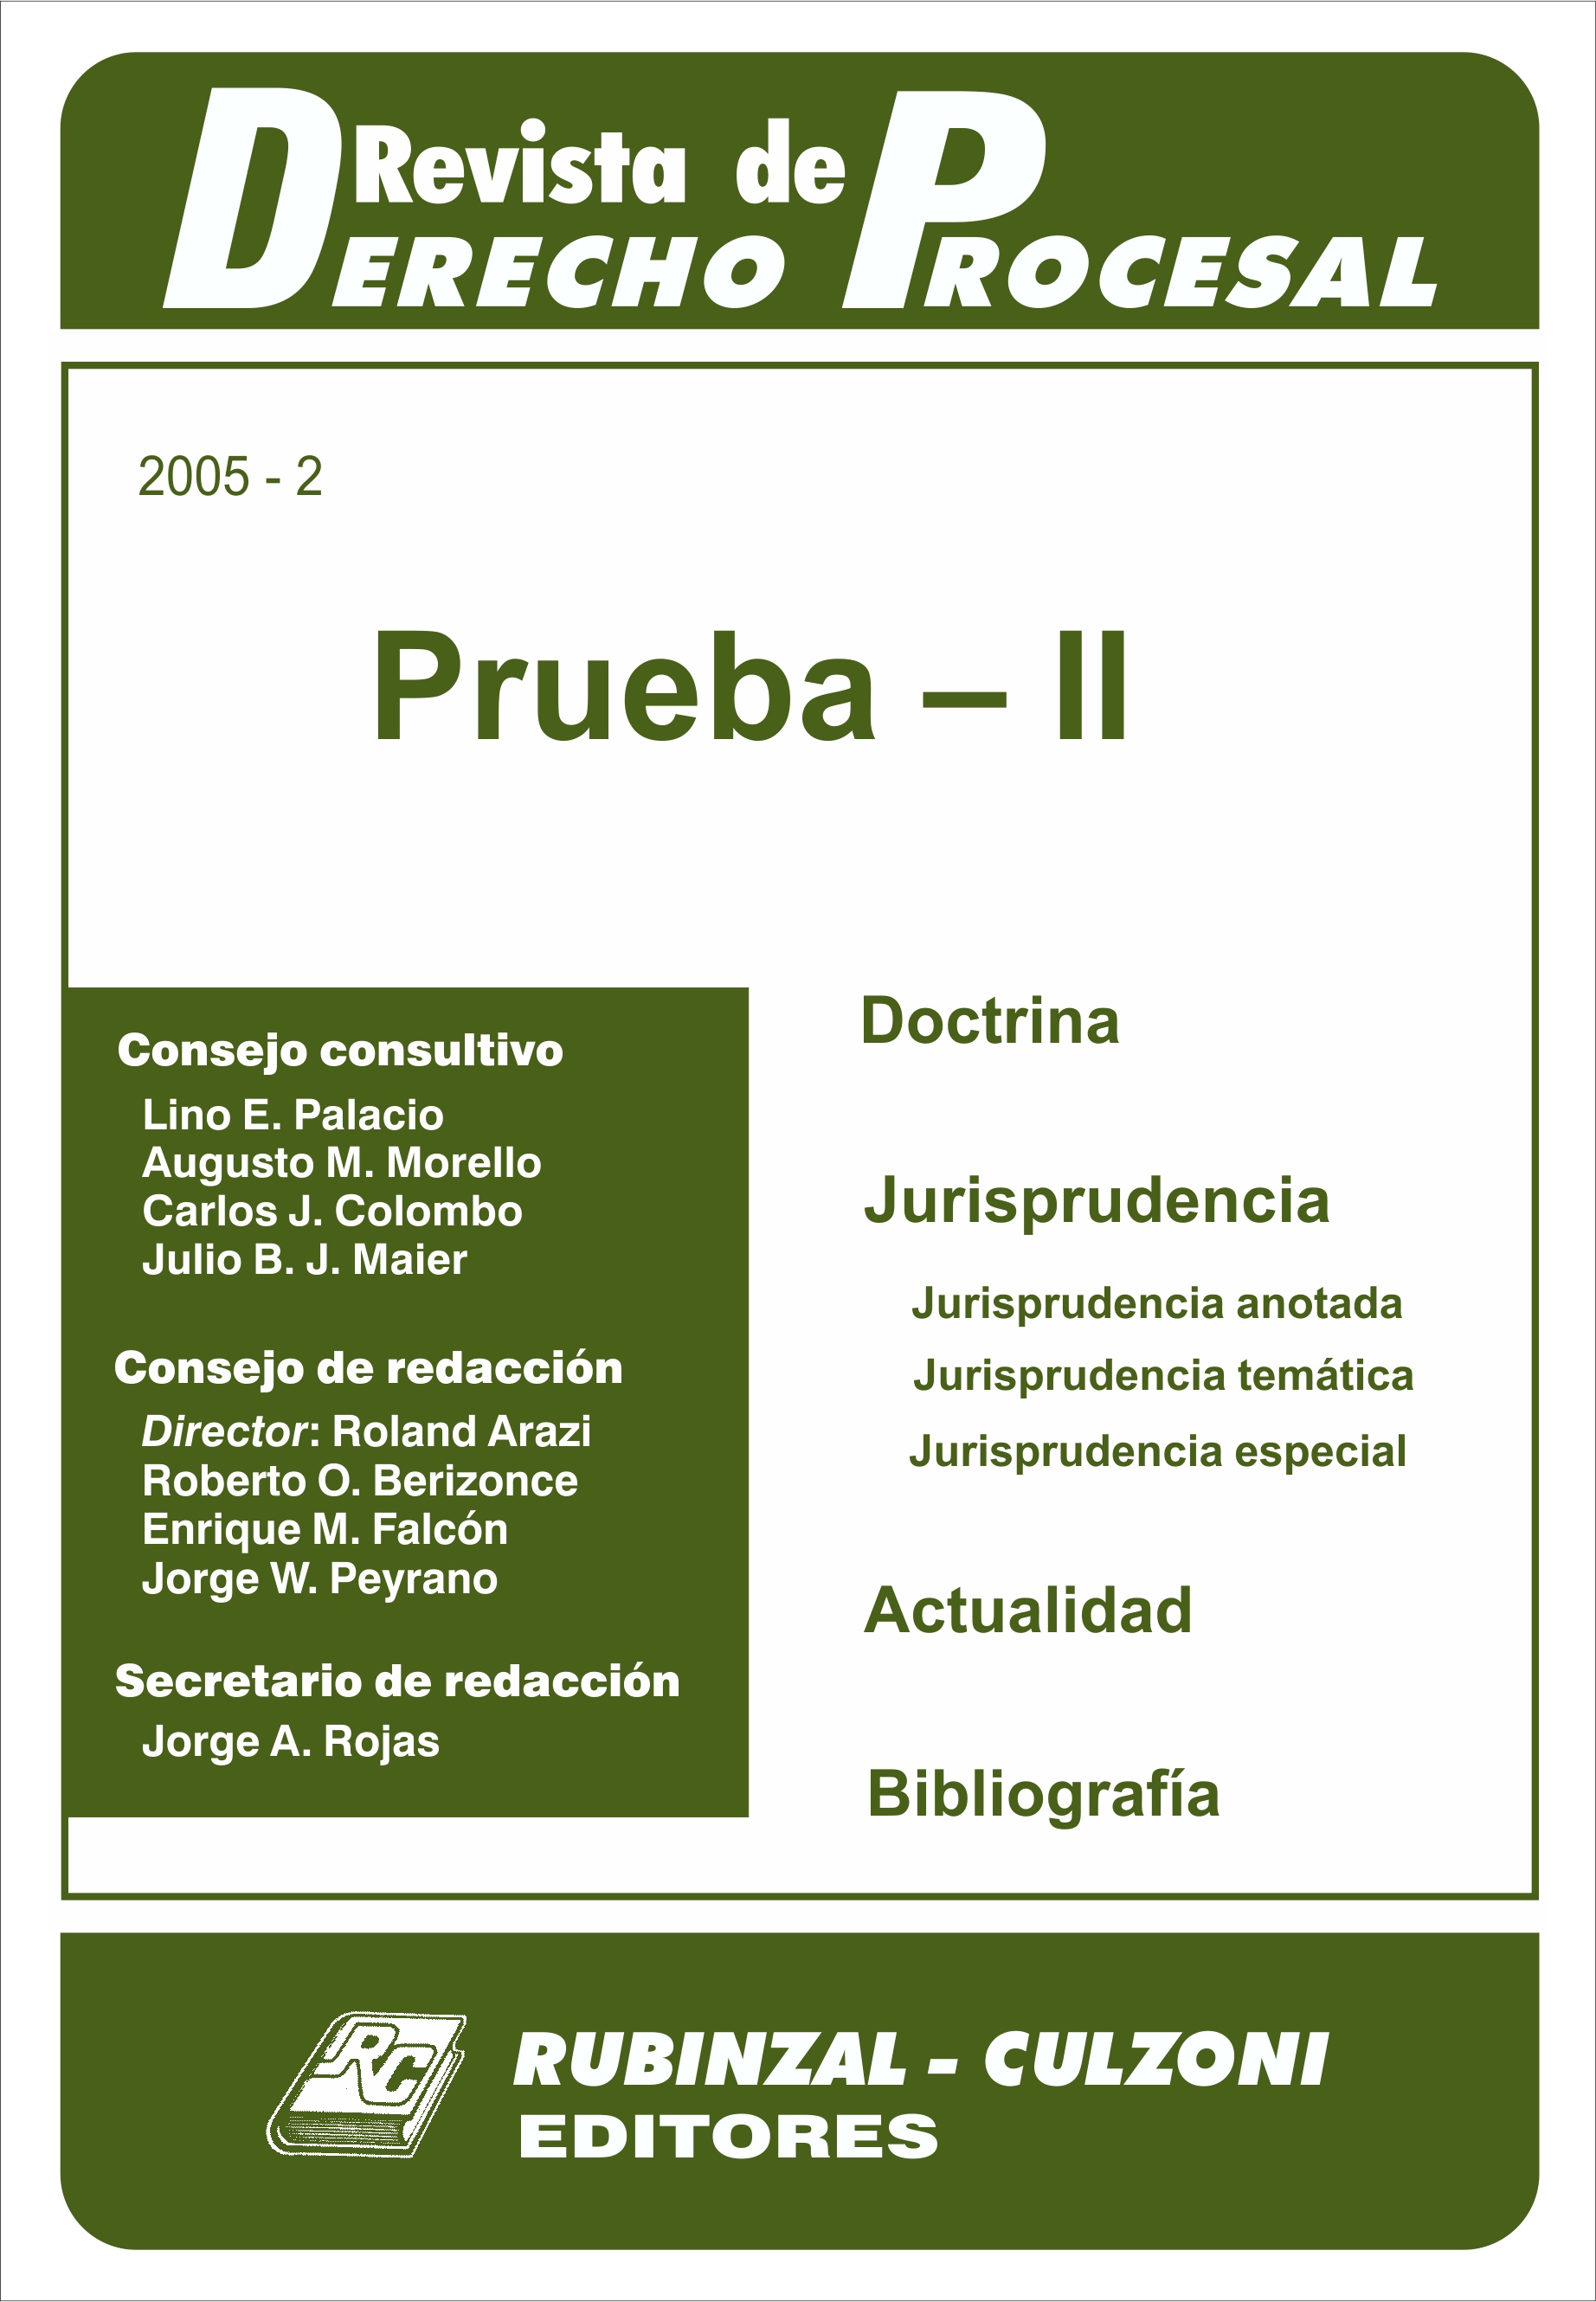 Revista de Derecho Procesal - Prueba - II